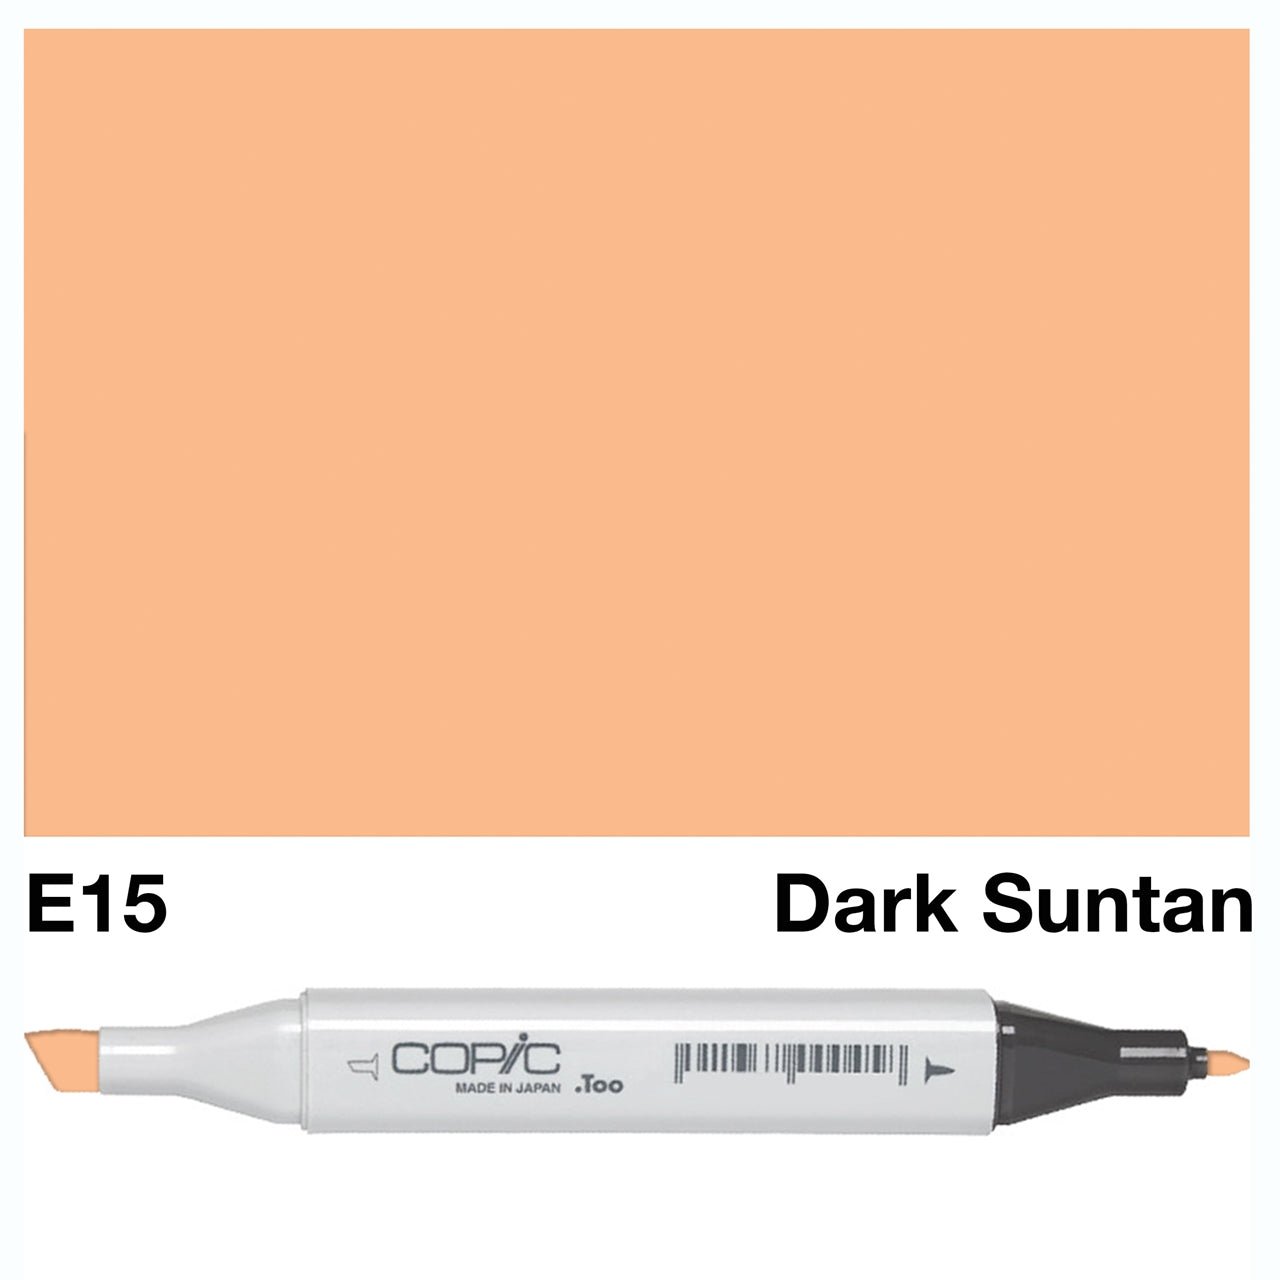 Copic Classic Marker E15 Dark Suntan - theartshop.com.au